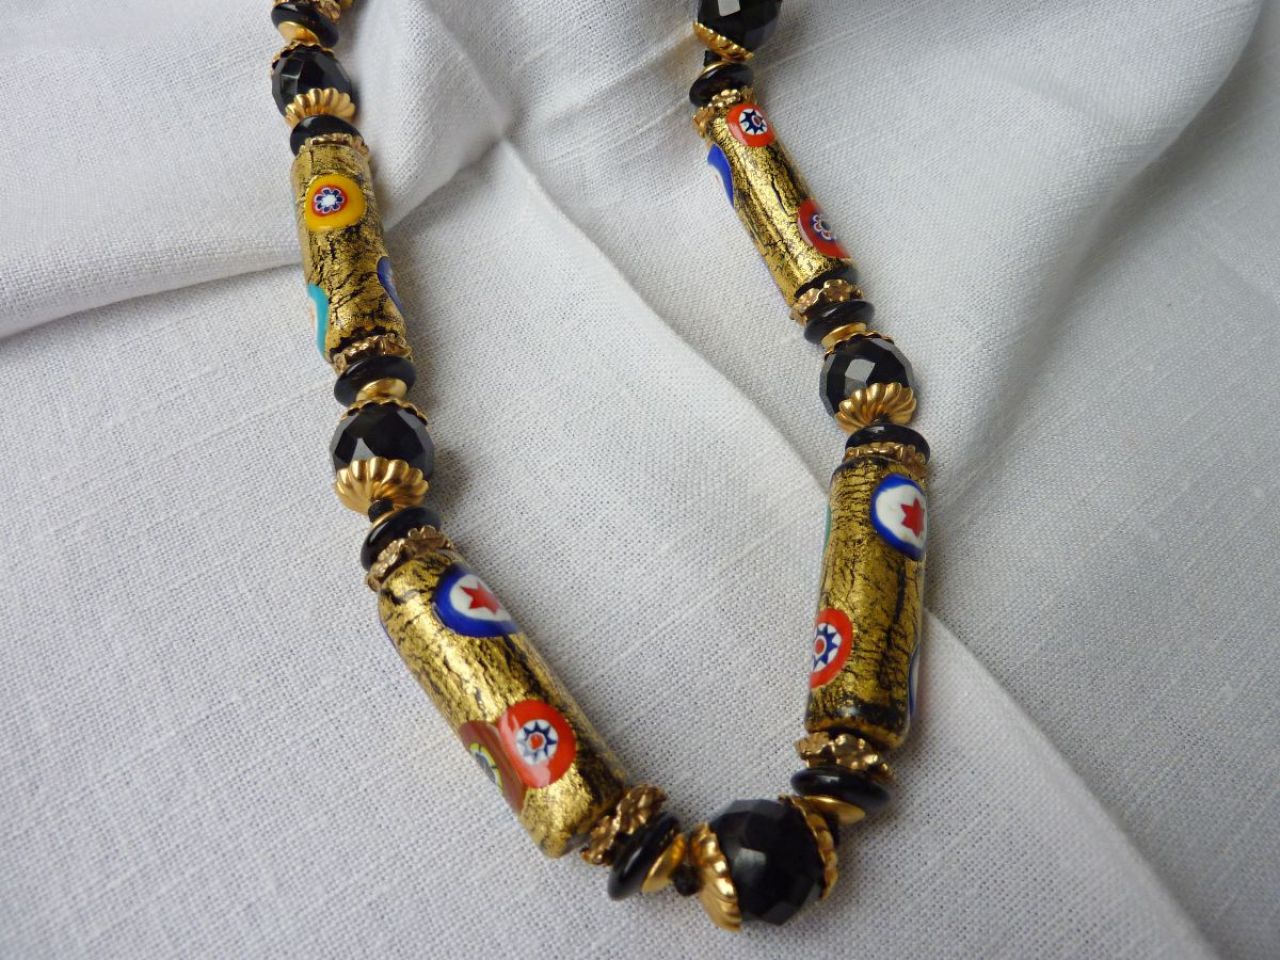 collier avec perle en verre de Murano fait main, incrustations de millefleurs application de feuille d'or à 24 carats sur fond noir, perle rondes en cristalnoir